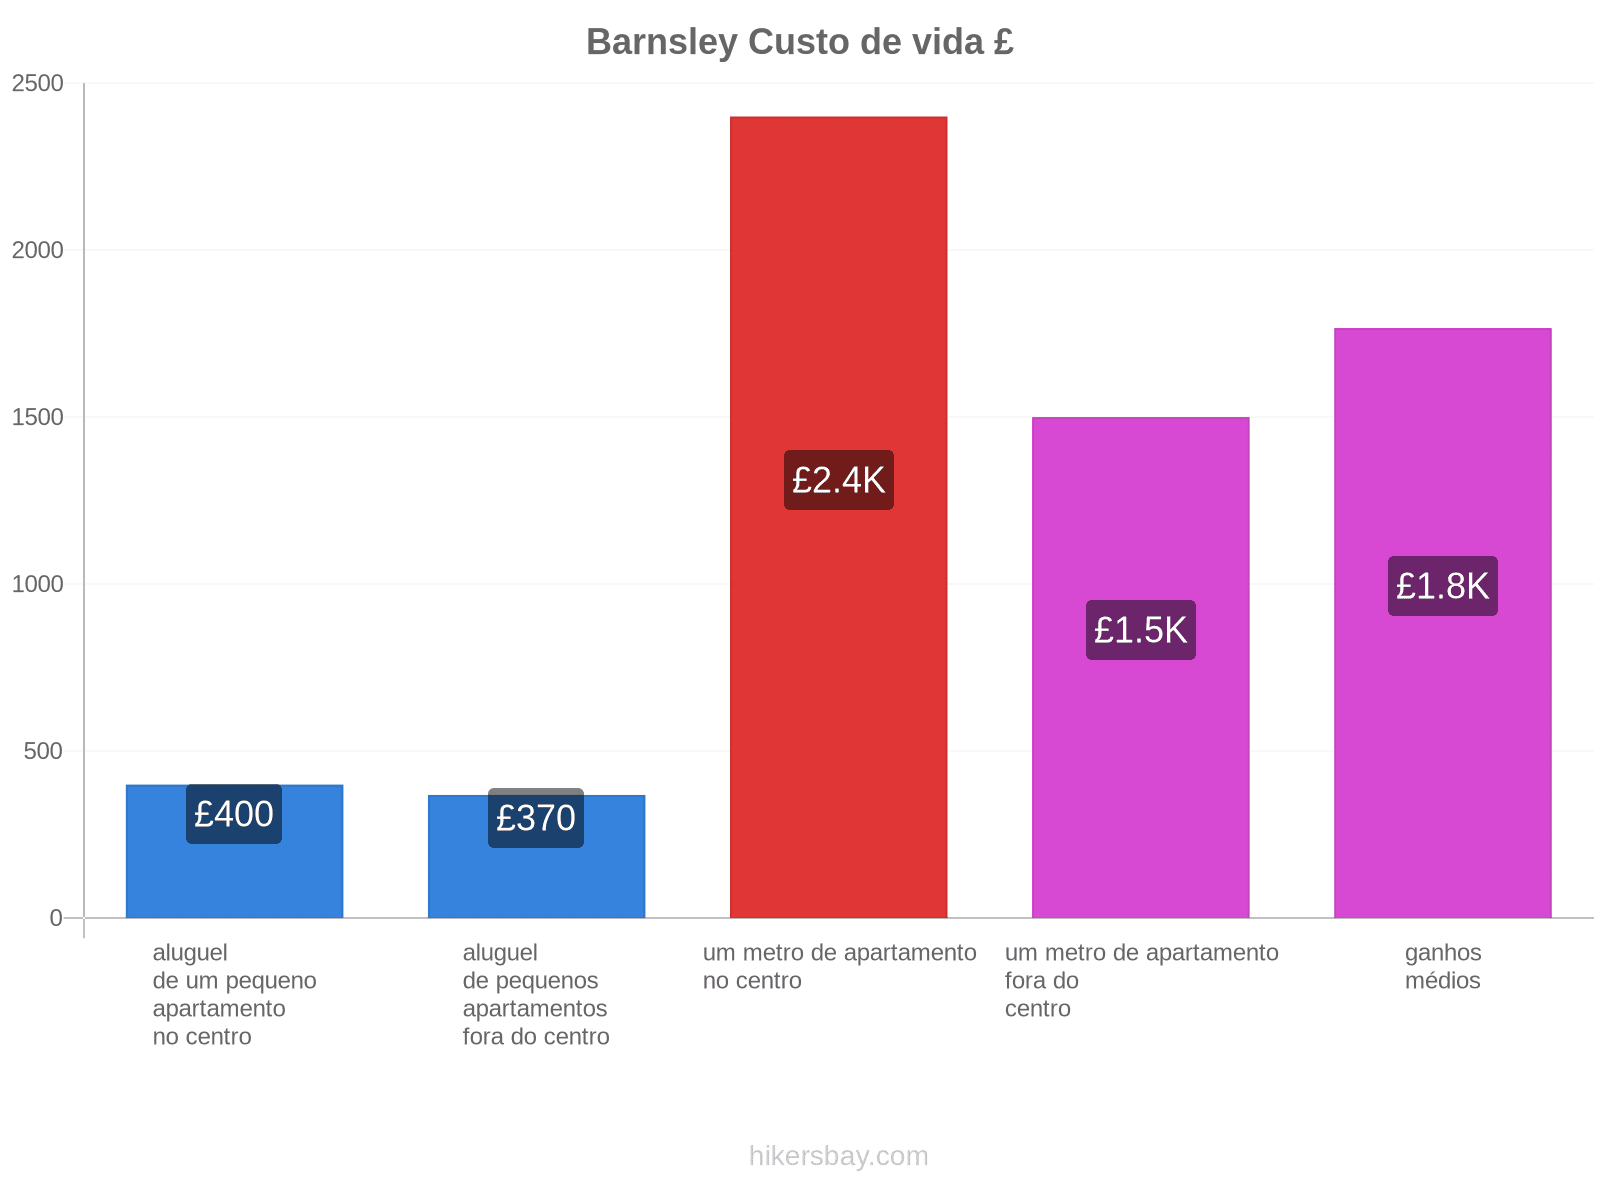 Barnsley custo de vida hikersbay.com